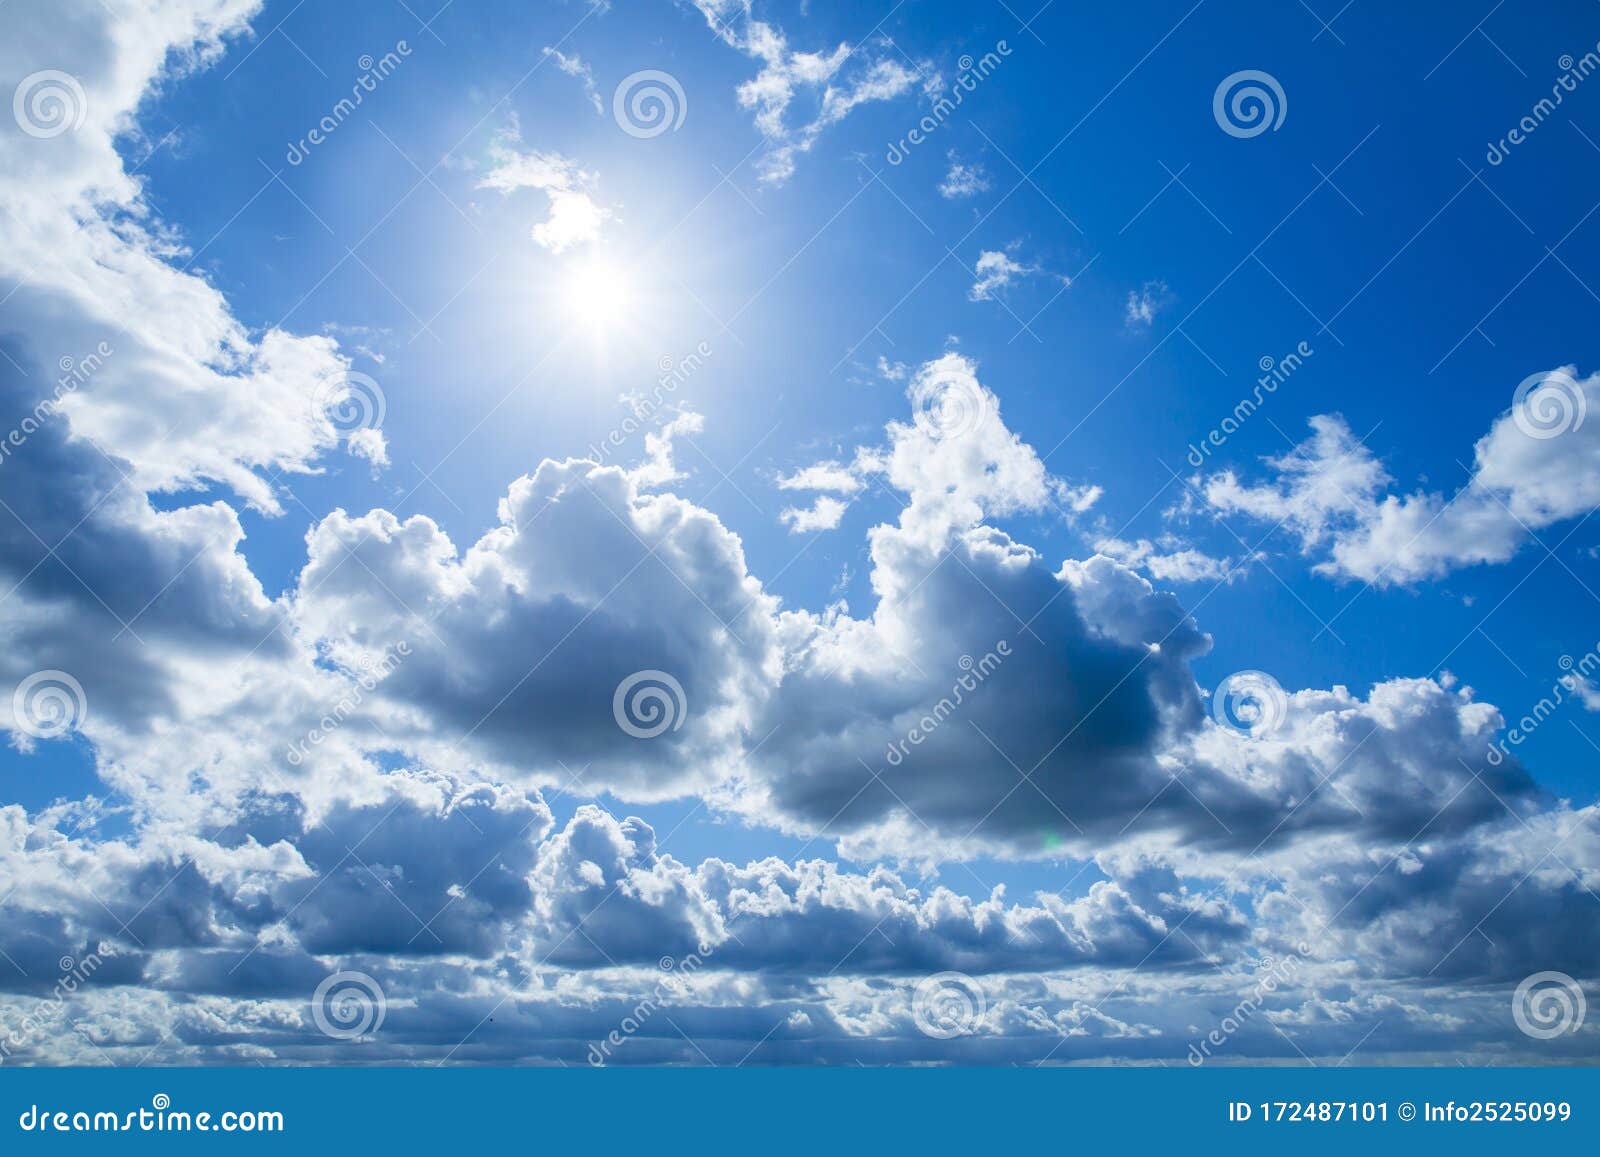 Nếu bạn yêu thích thiên nhiên thì hãy dành chút ít thời gian để chiêm ngưỡng bầu trời xanh với đám mây đang bay lượn. Sự hài hòa giữa màu xanh và trắng sẽ khiến bạn cảm thấy bình yên, gợi lên những trải nghiệm và cảm xúc đặc biệt.